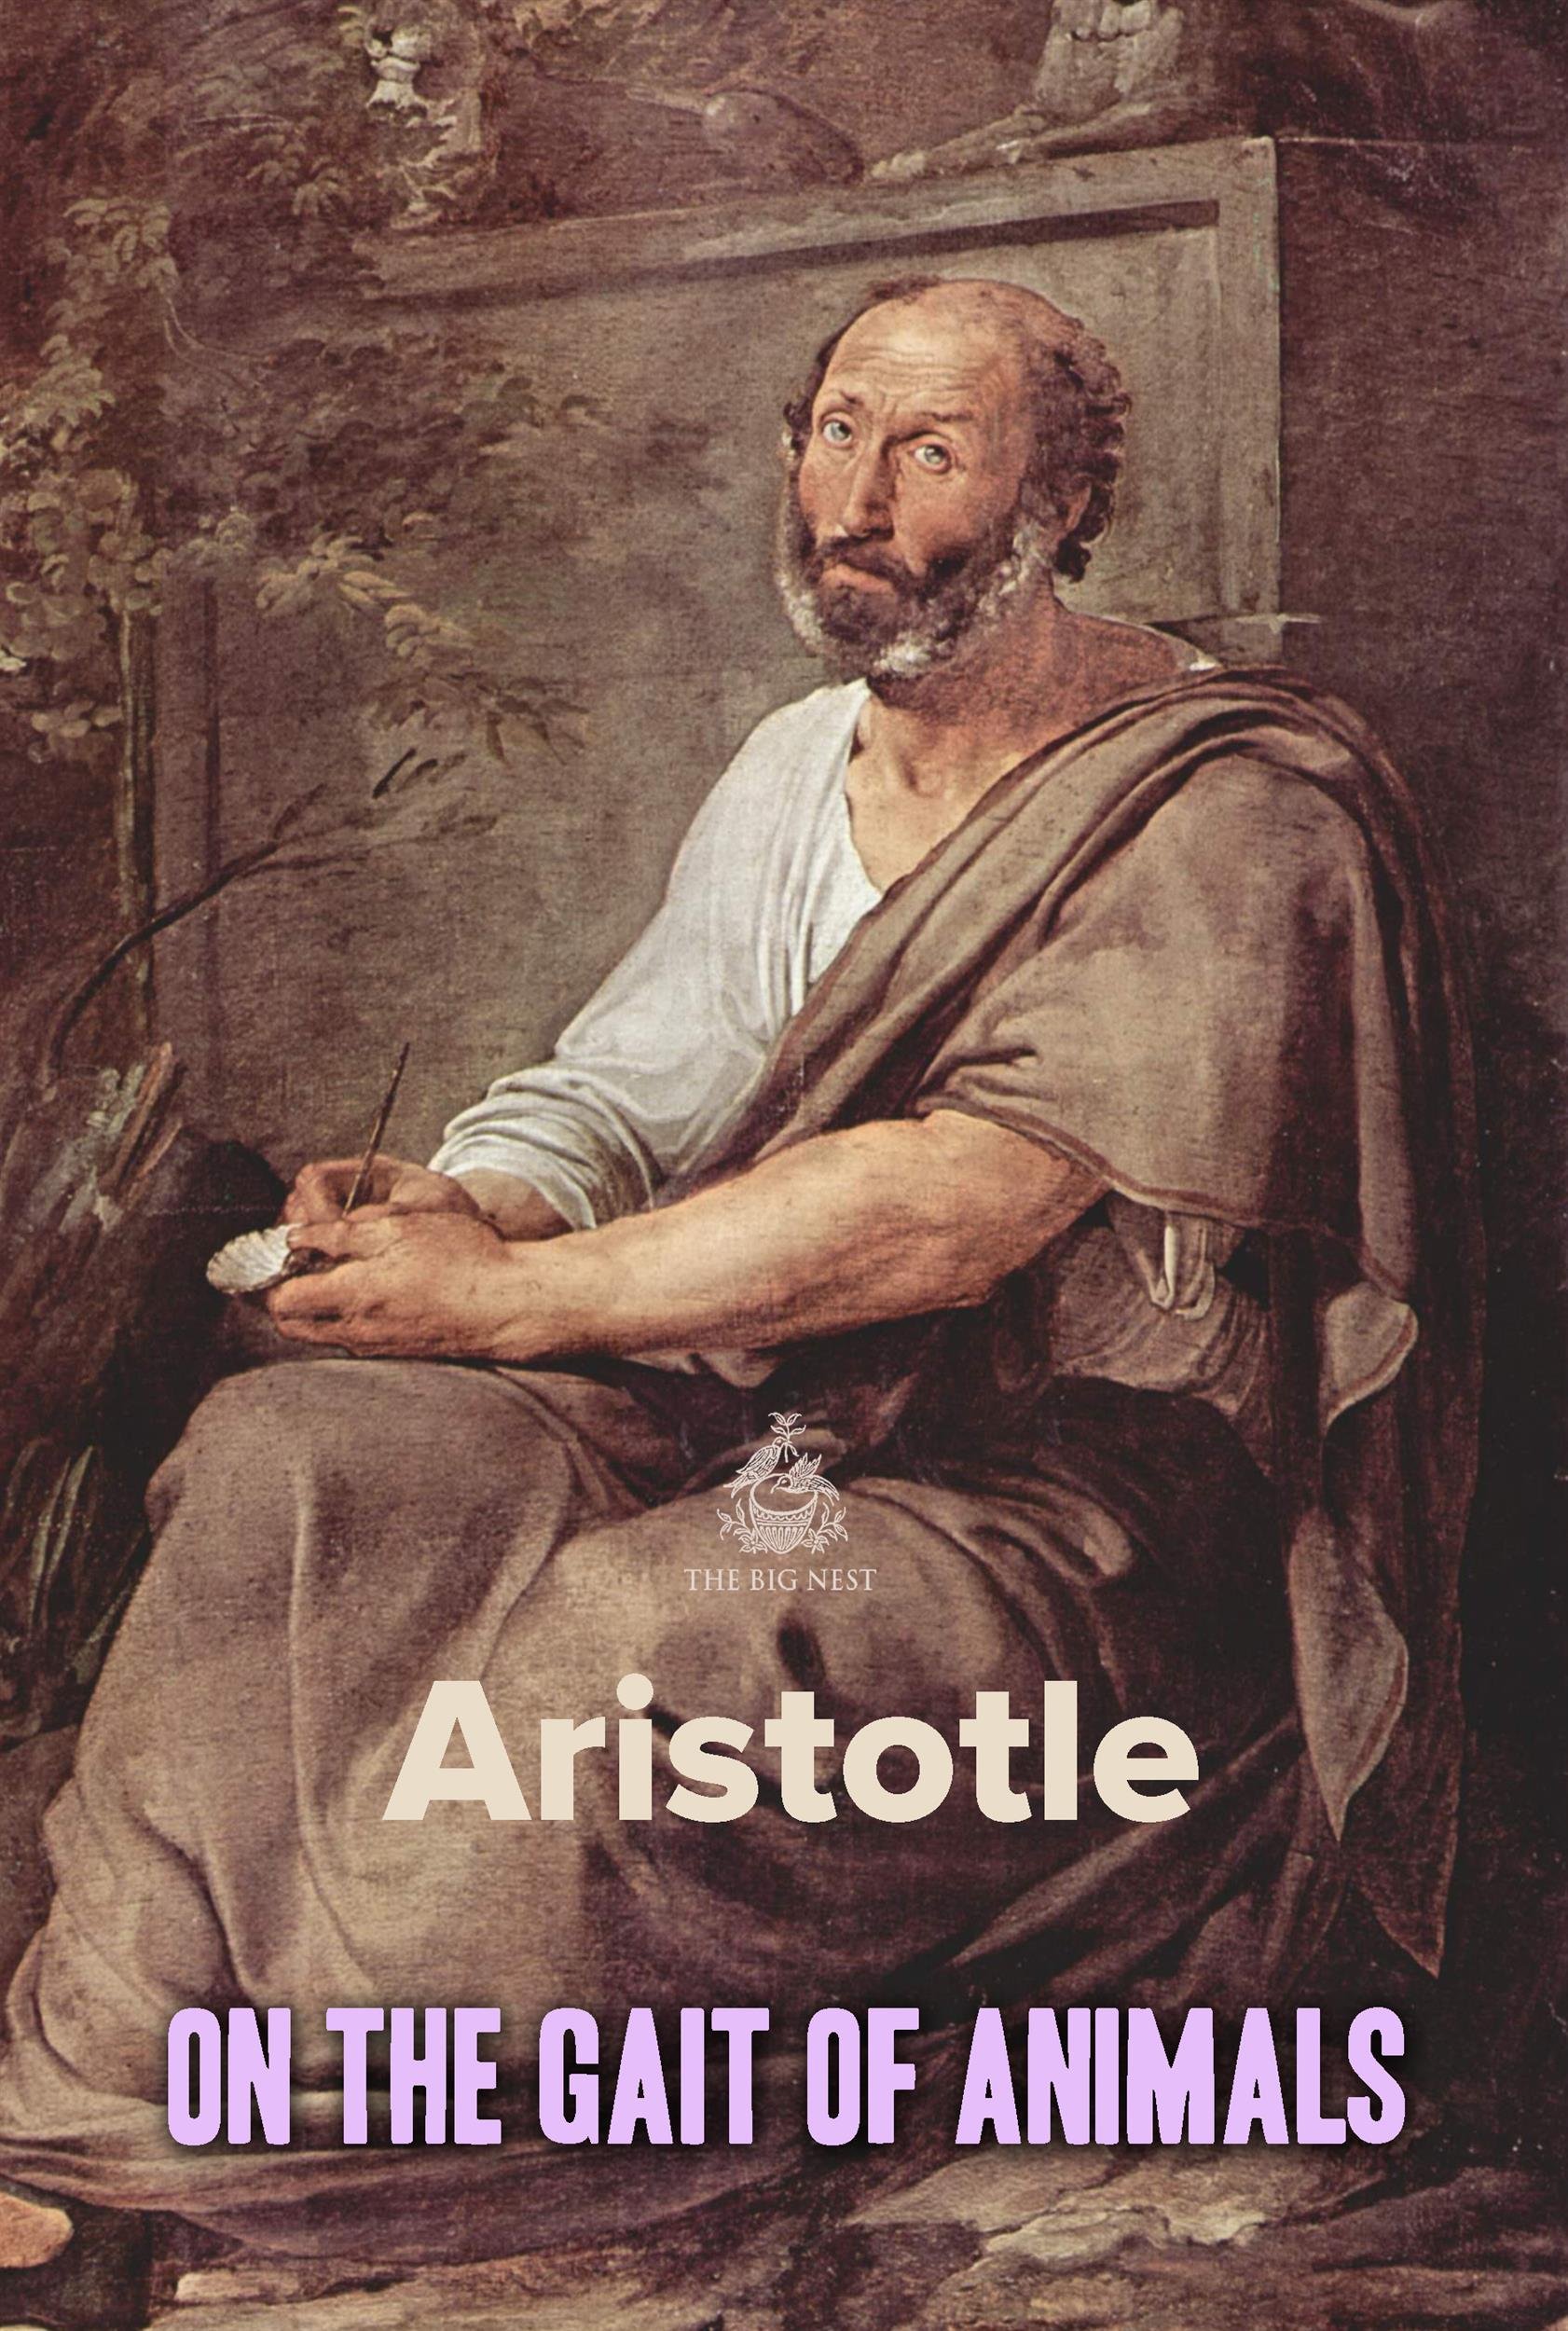 ON THE GAIT OF ANIMALS - Aristotle